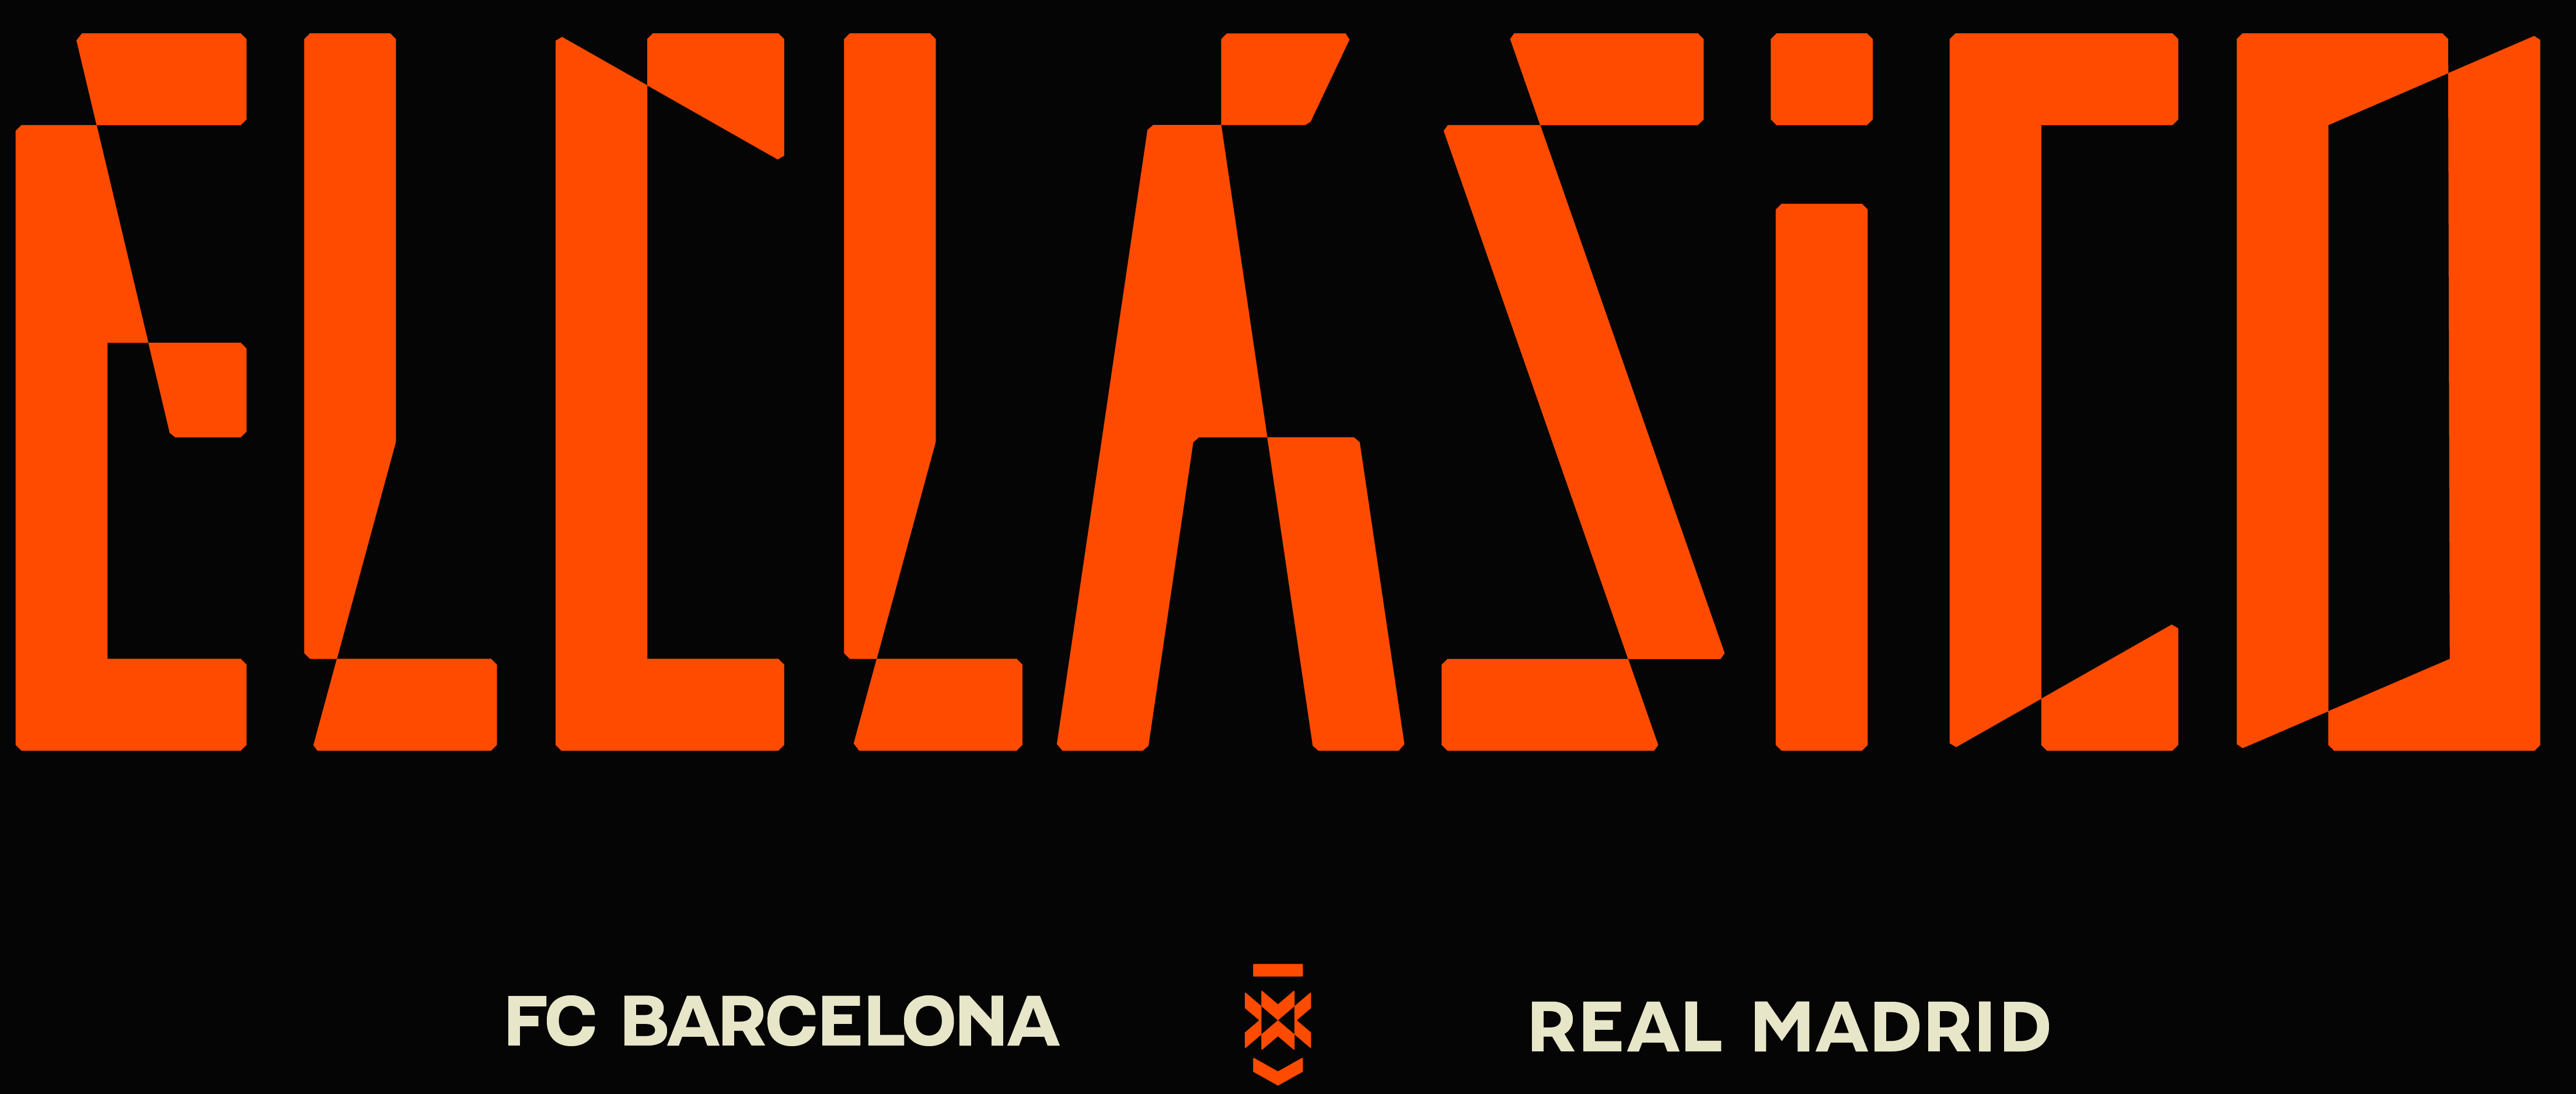 LaLiga présente la nouvelle identité de marque d’ElClasico